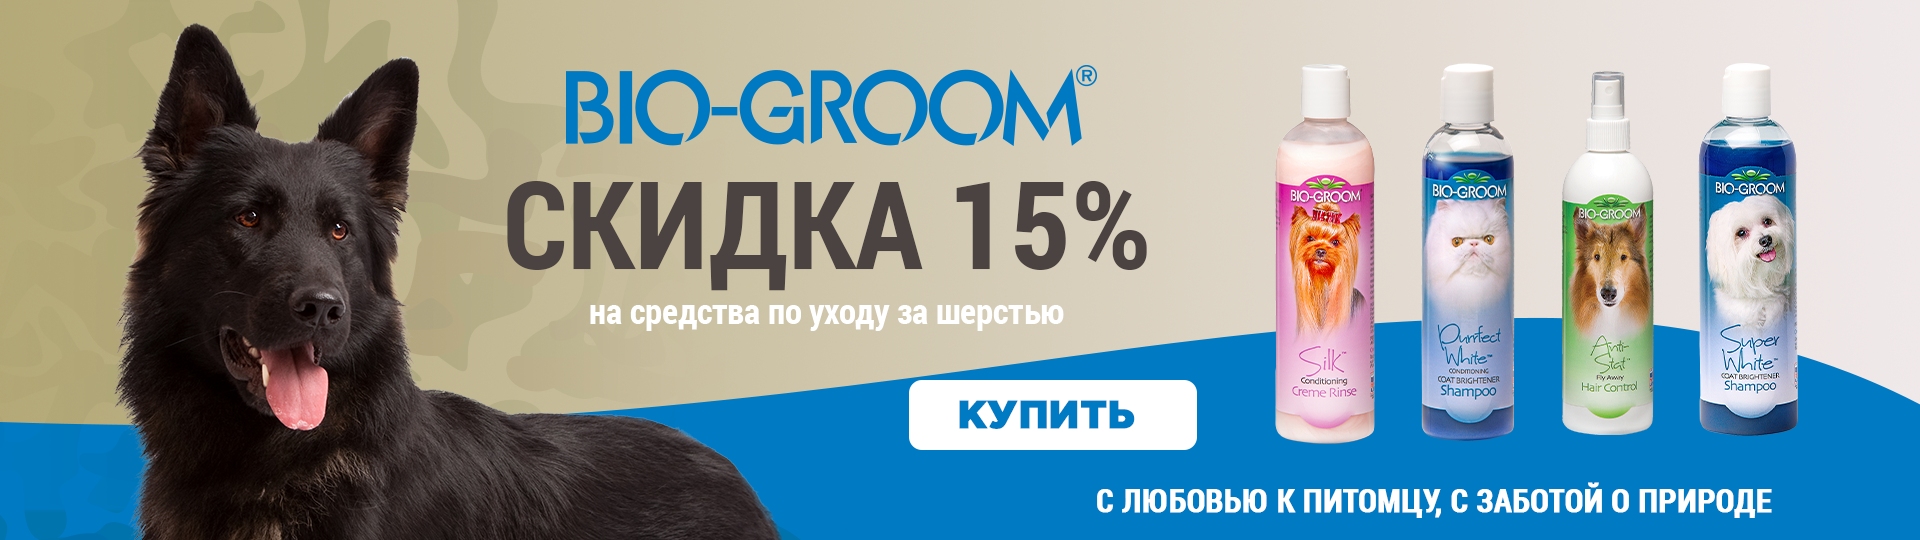 купить Bio-Groom с бесплатной доставкой в Калининграде